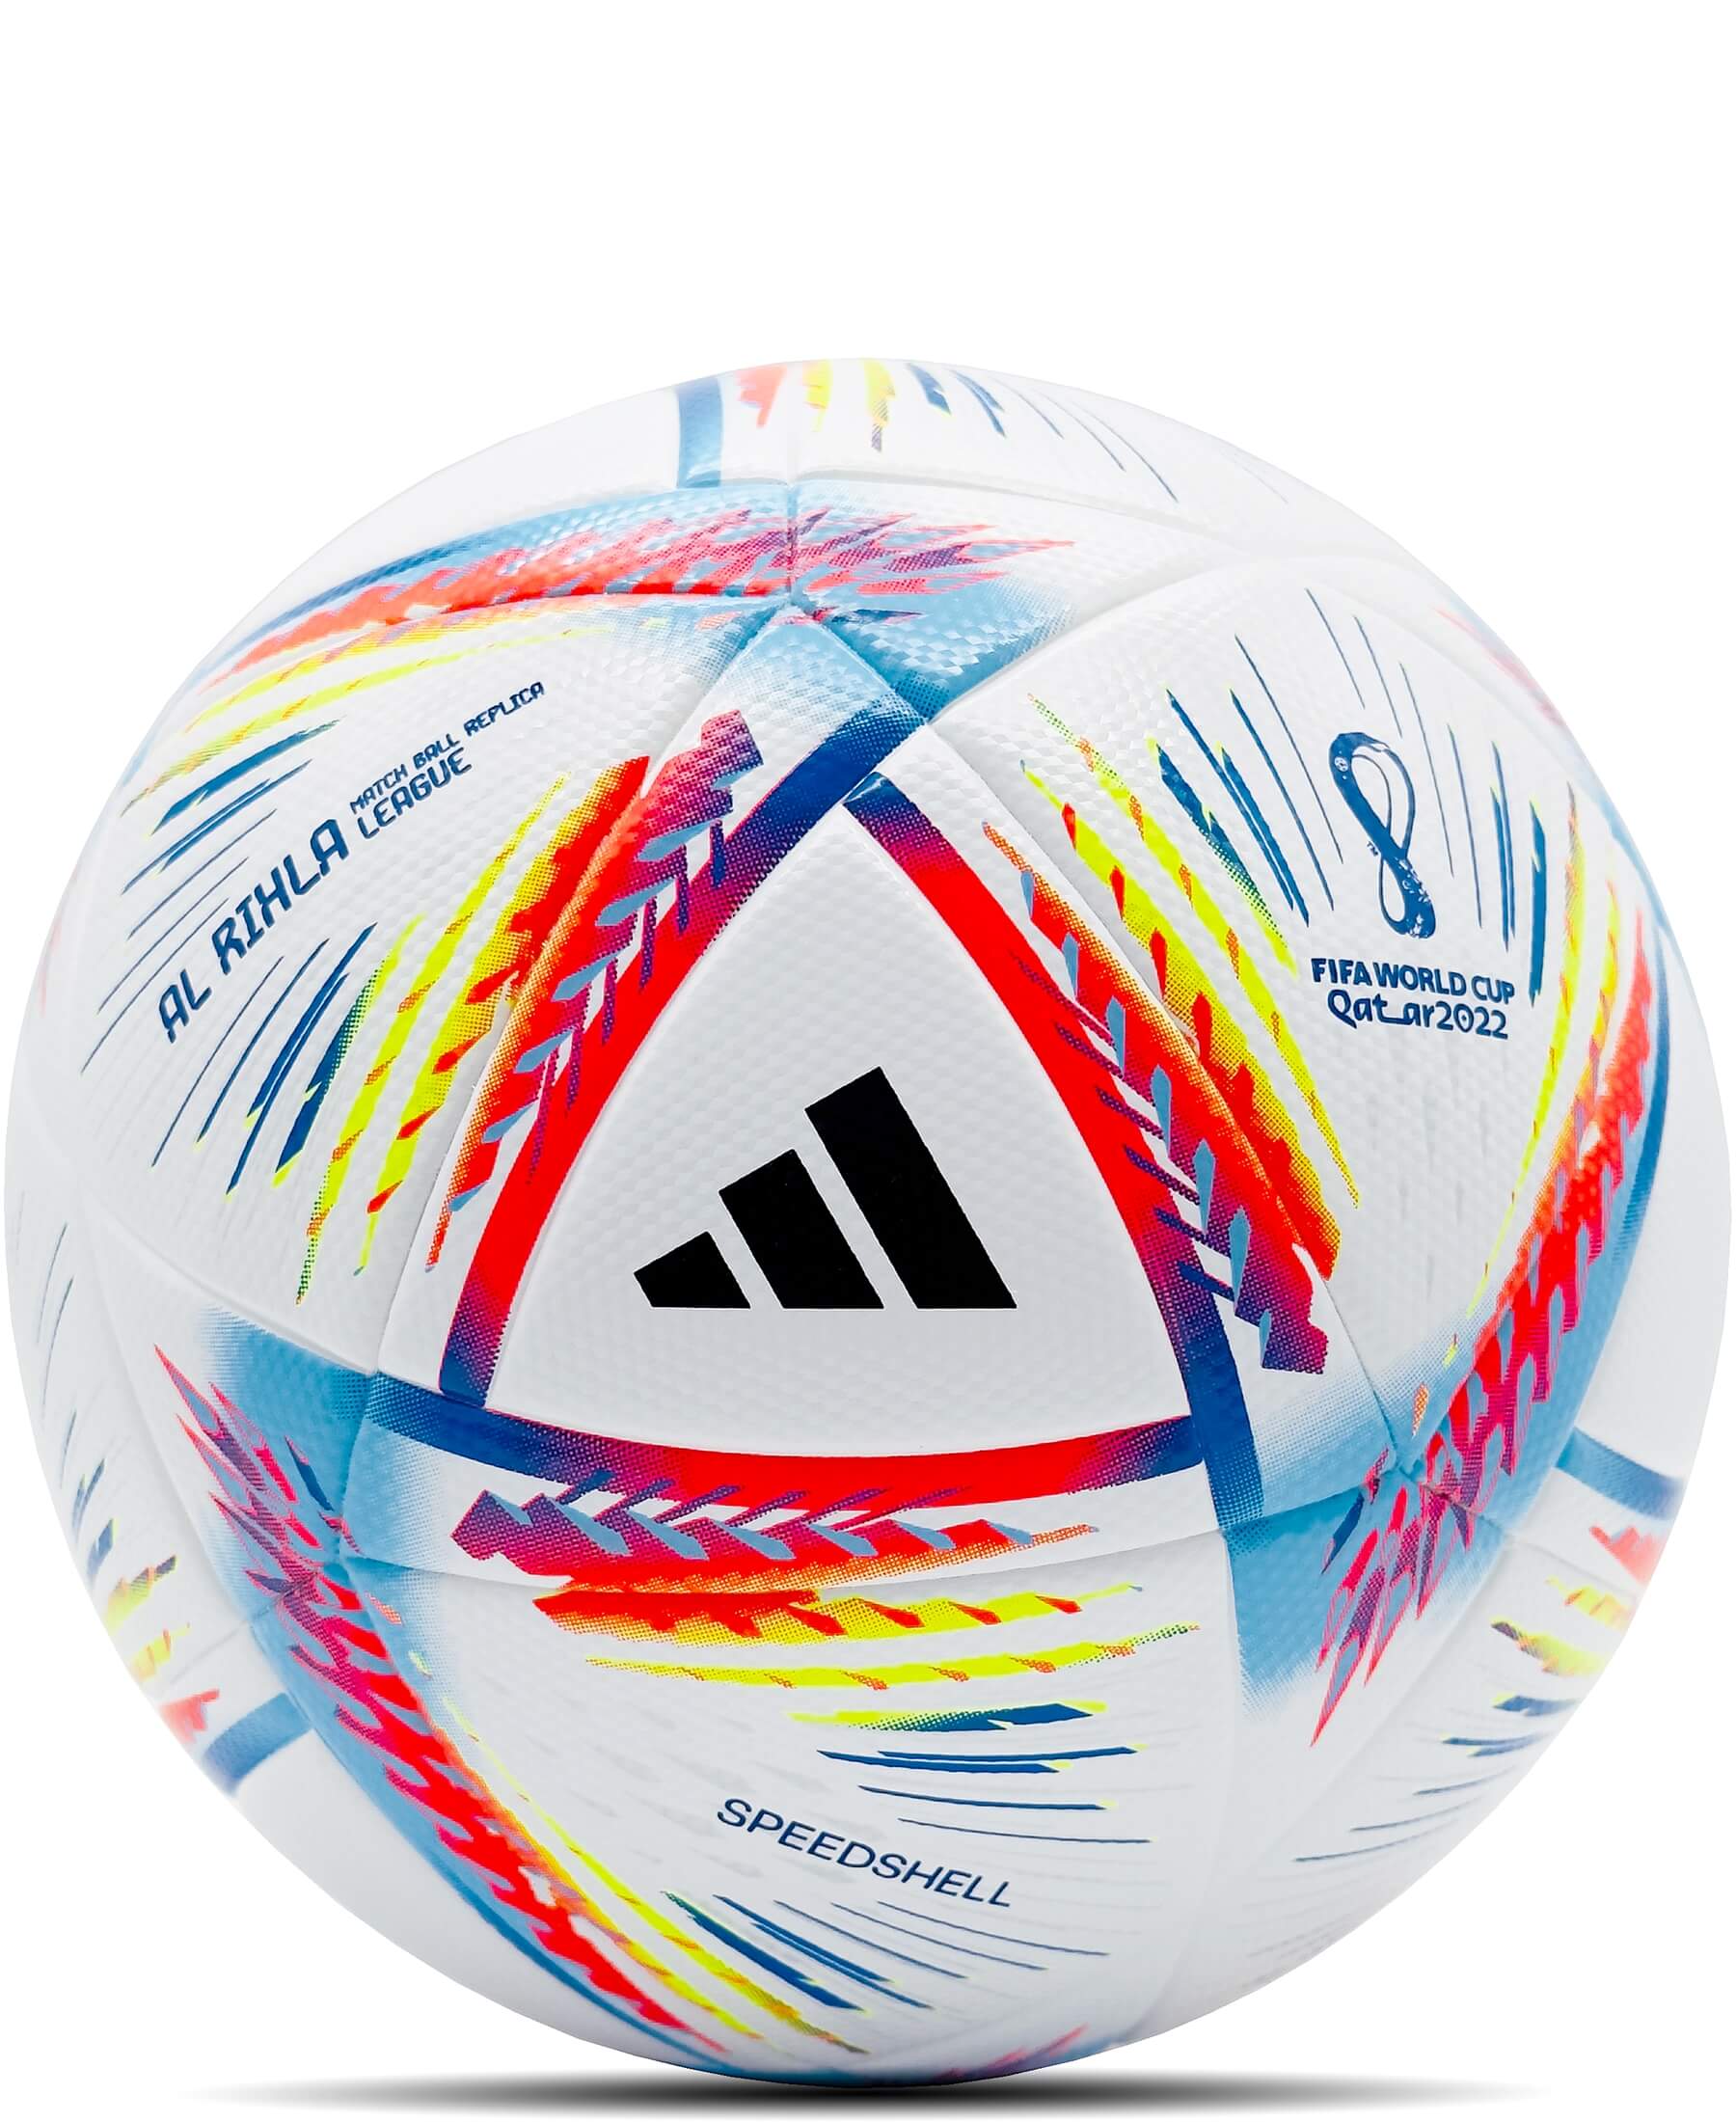 Der original adidas Replica Match Ball der WM Qatar 2022 ist ein offizieller Replica Ball, der für den Trainingsbedarf entwickelt wurde. Er verfügt über eine Butyl-Blase, die eine optimale Luftrückhaltung gewährleistet. Die Grafiken auf dem Ball sorgen für perfekte Sichtbarkeit während des Spiels. Der Ball erfüllt den FIFA Quality Standard und entspricht somit höchsten Qualitätsstandards. Er wird in einem Präsentationskarton geliefert, der den Ball sicher aufbewahrt und präsentiert.